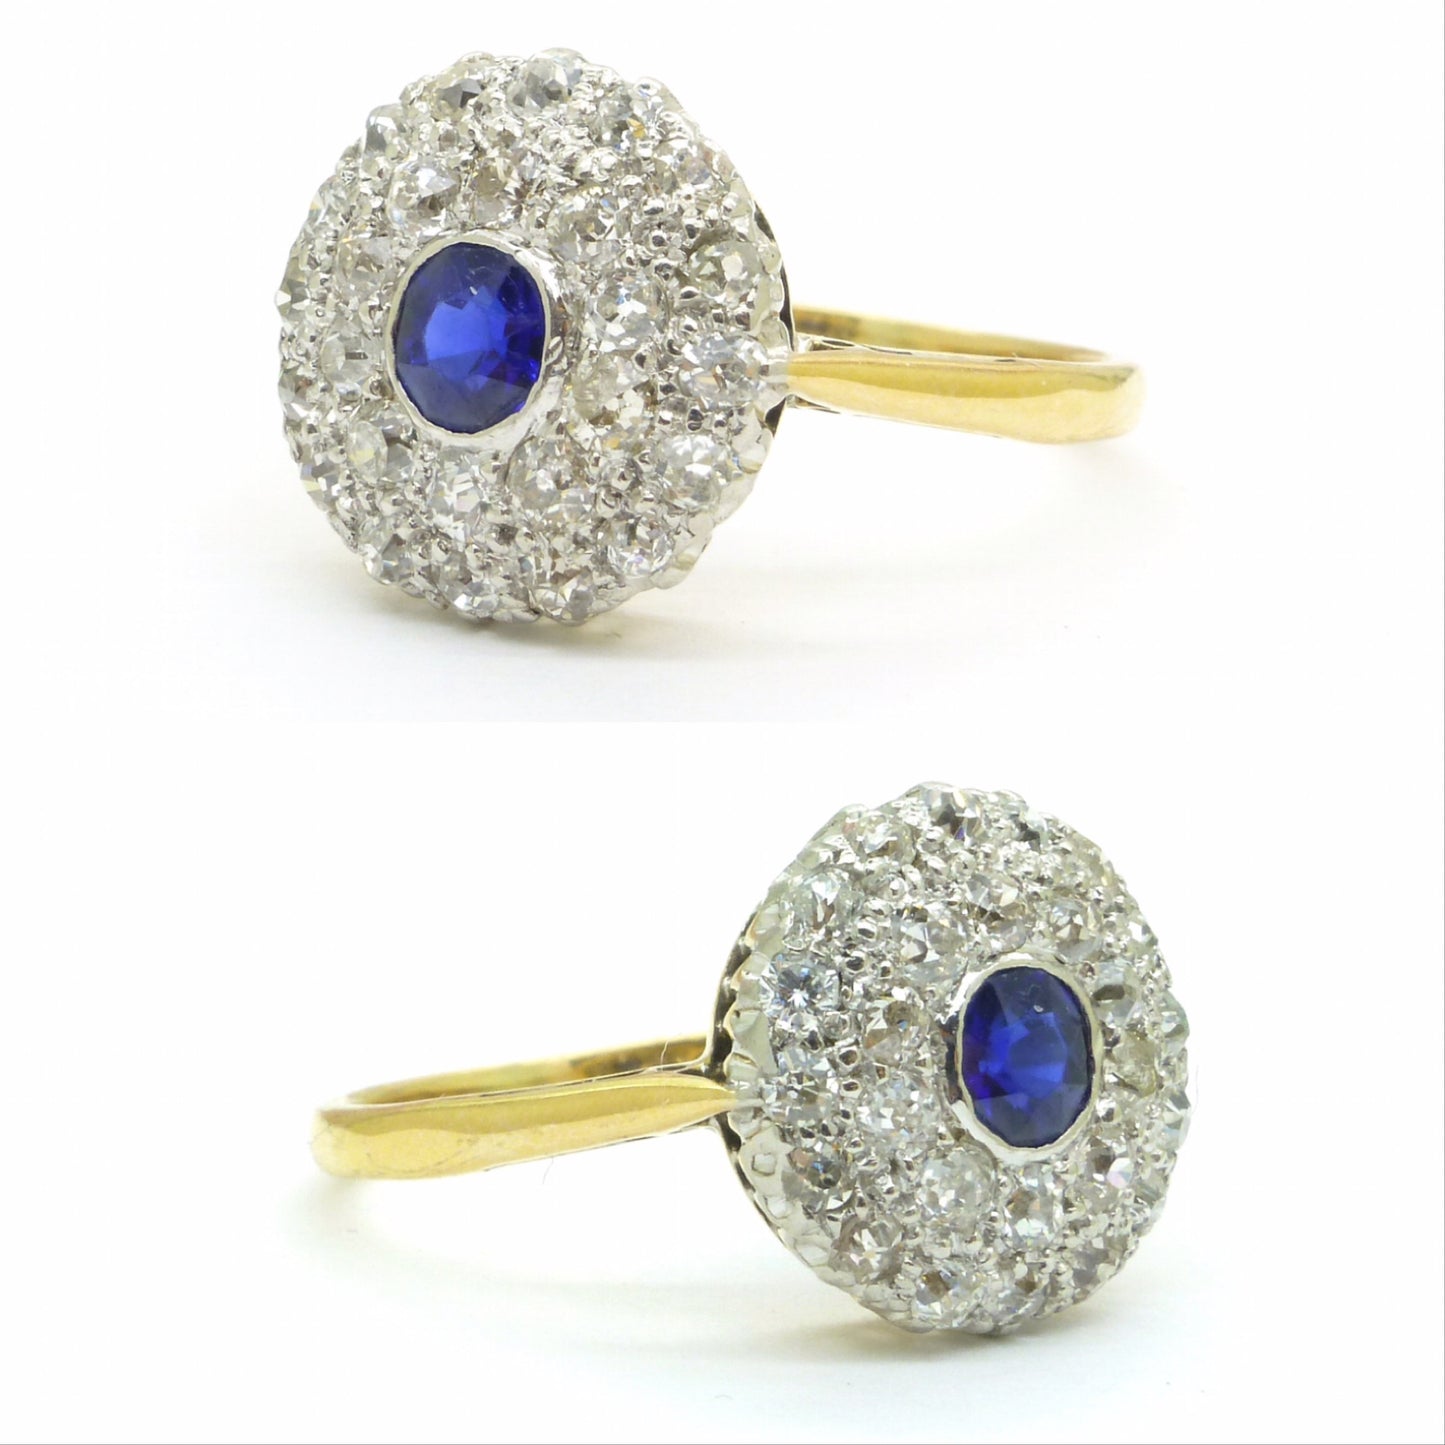 Antique Art Deco 18ct platinum sapphire & diamond halo cluster ring c1920's